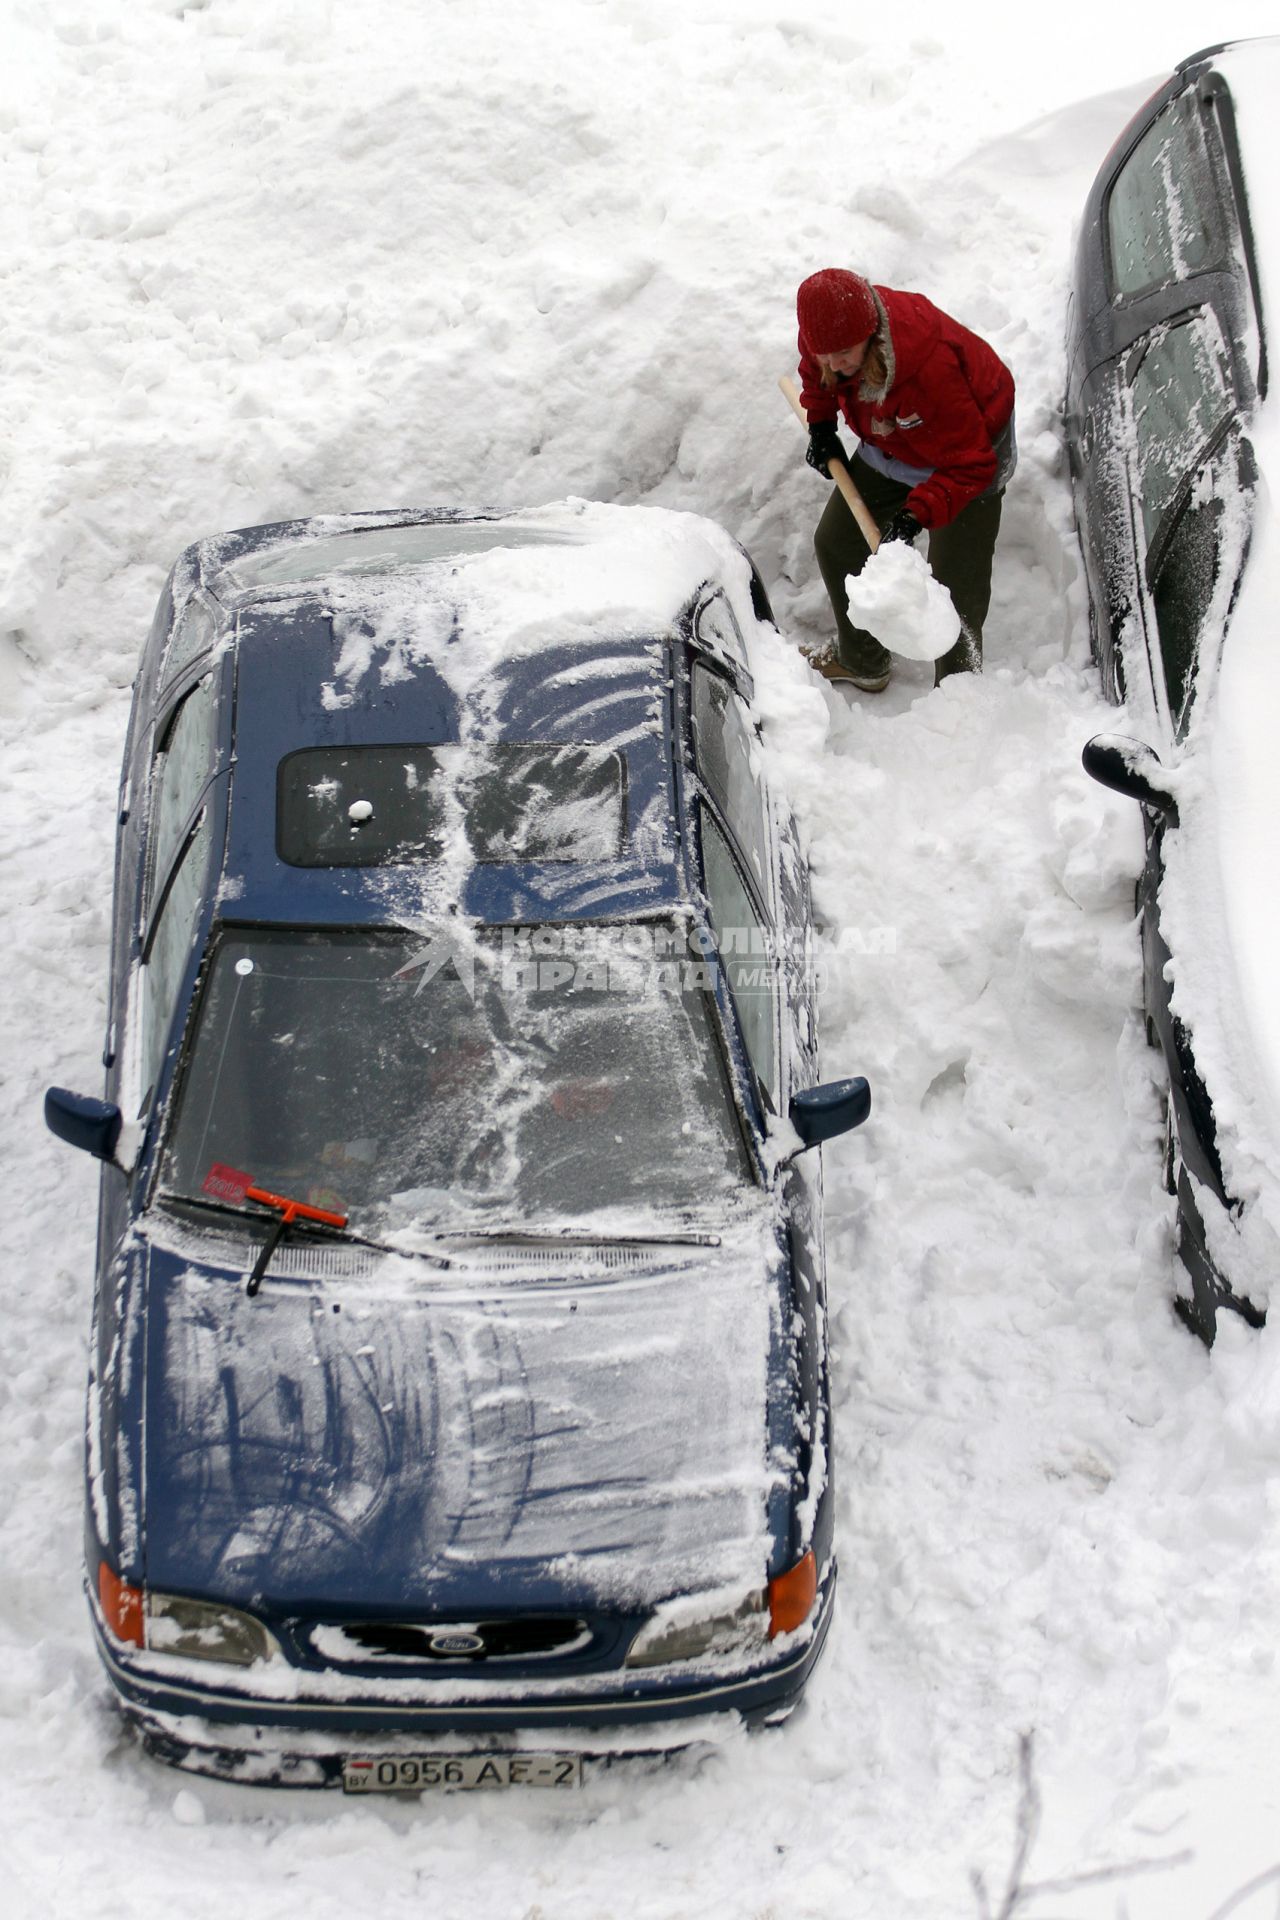 Женщина раскапывает занесенный во время снегопада автомобиль.